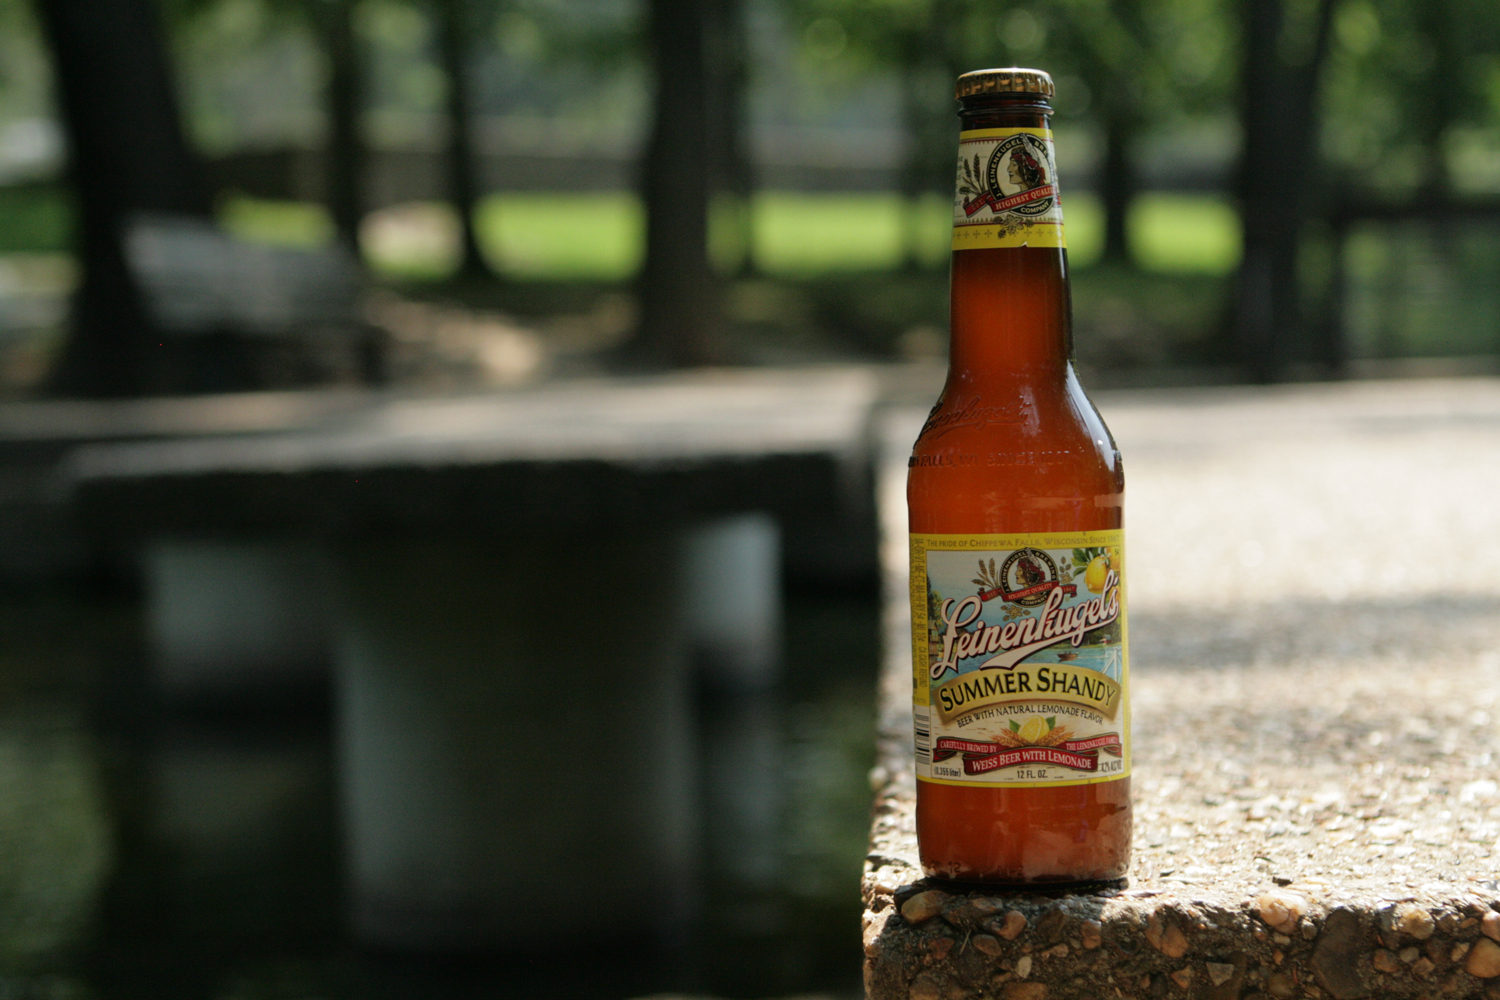 Leinenkugel Summer Shandy beer is a perfect lemon seasonal drink.